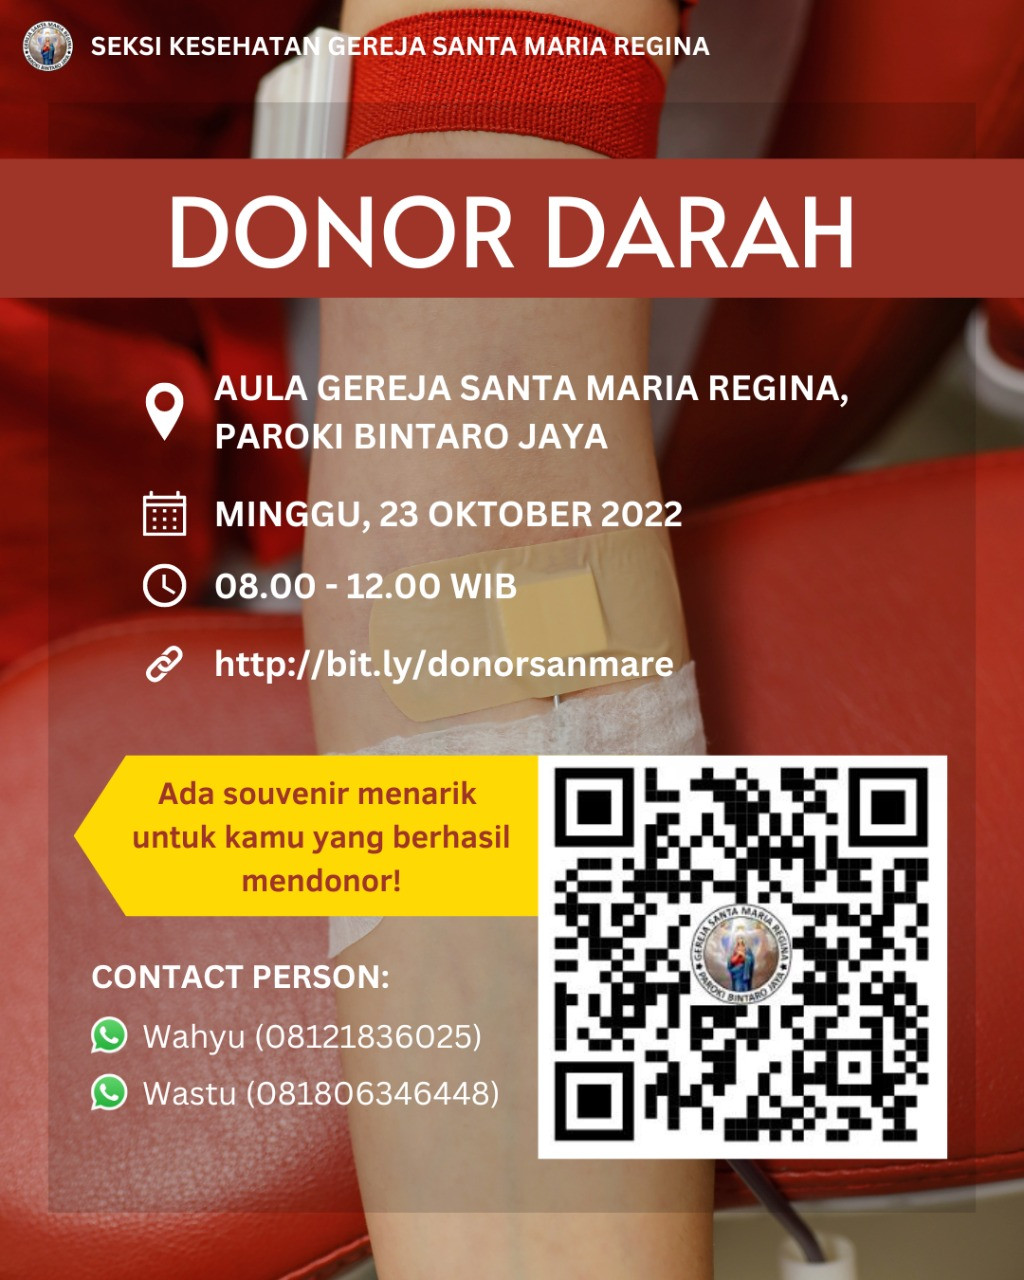 Donor Darah 23 Oktober 2022